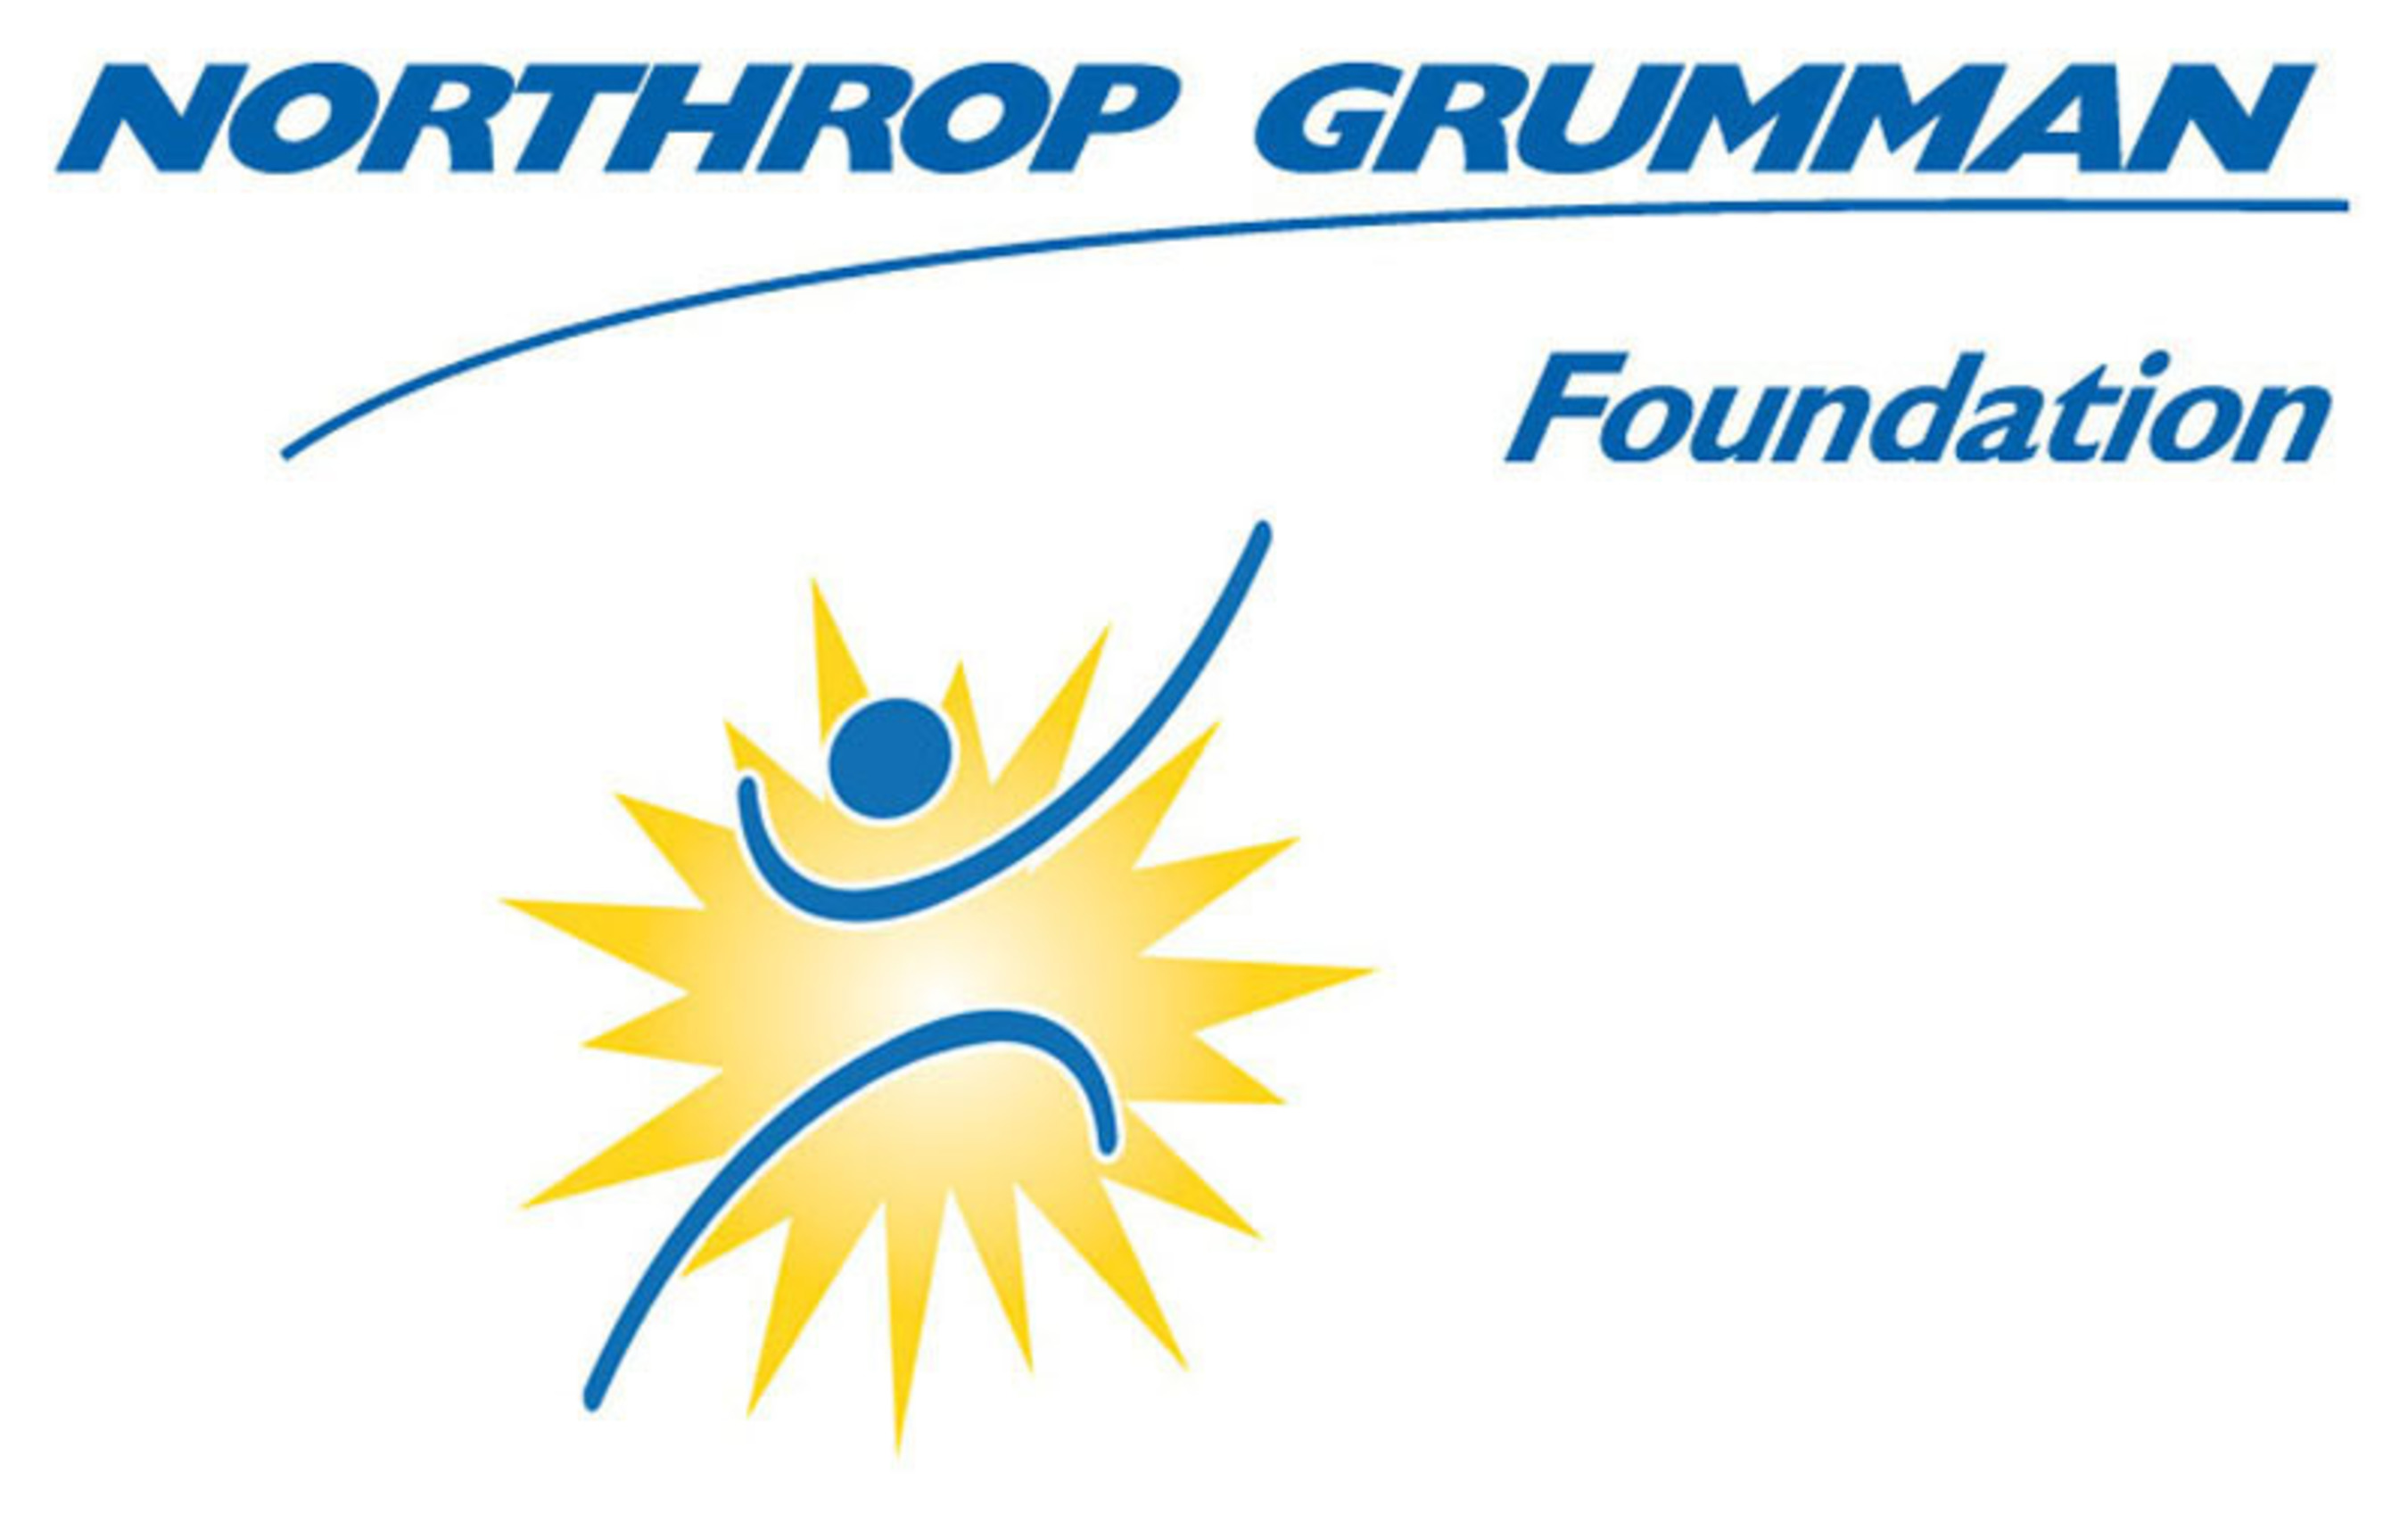 Northrop Grumman Foundation logo. (PRNewsFoto/Northrop Grumman Foundation)